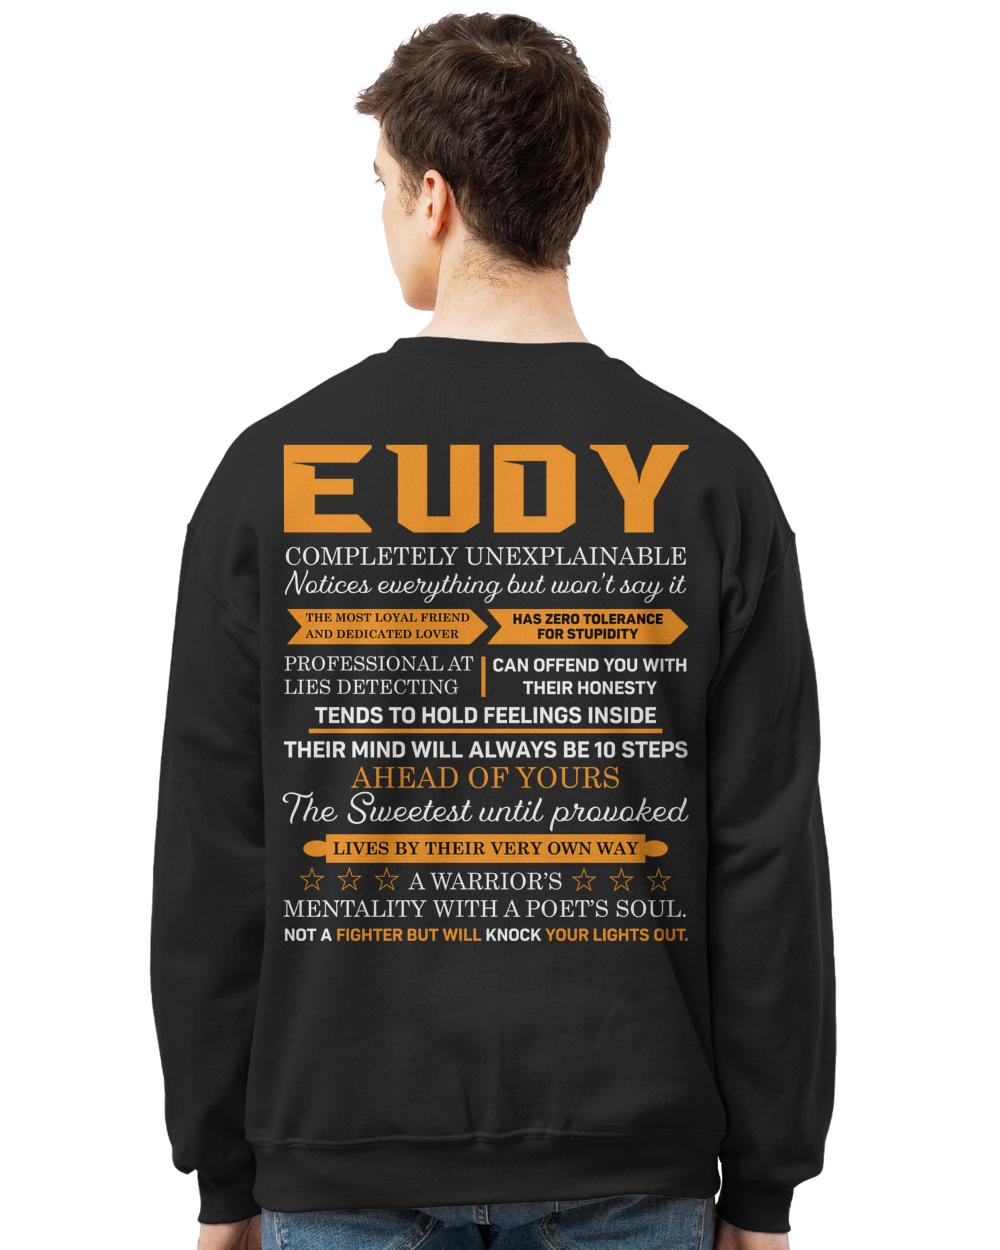 EUDY-A21-N1